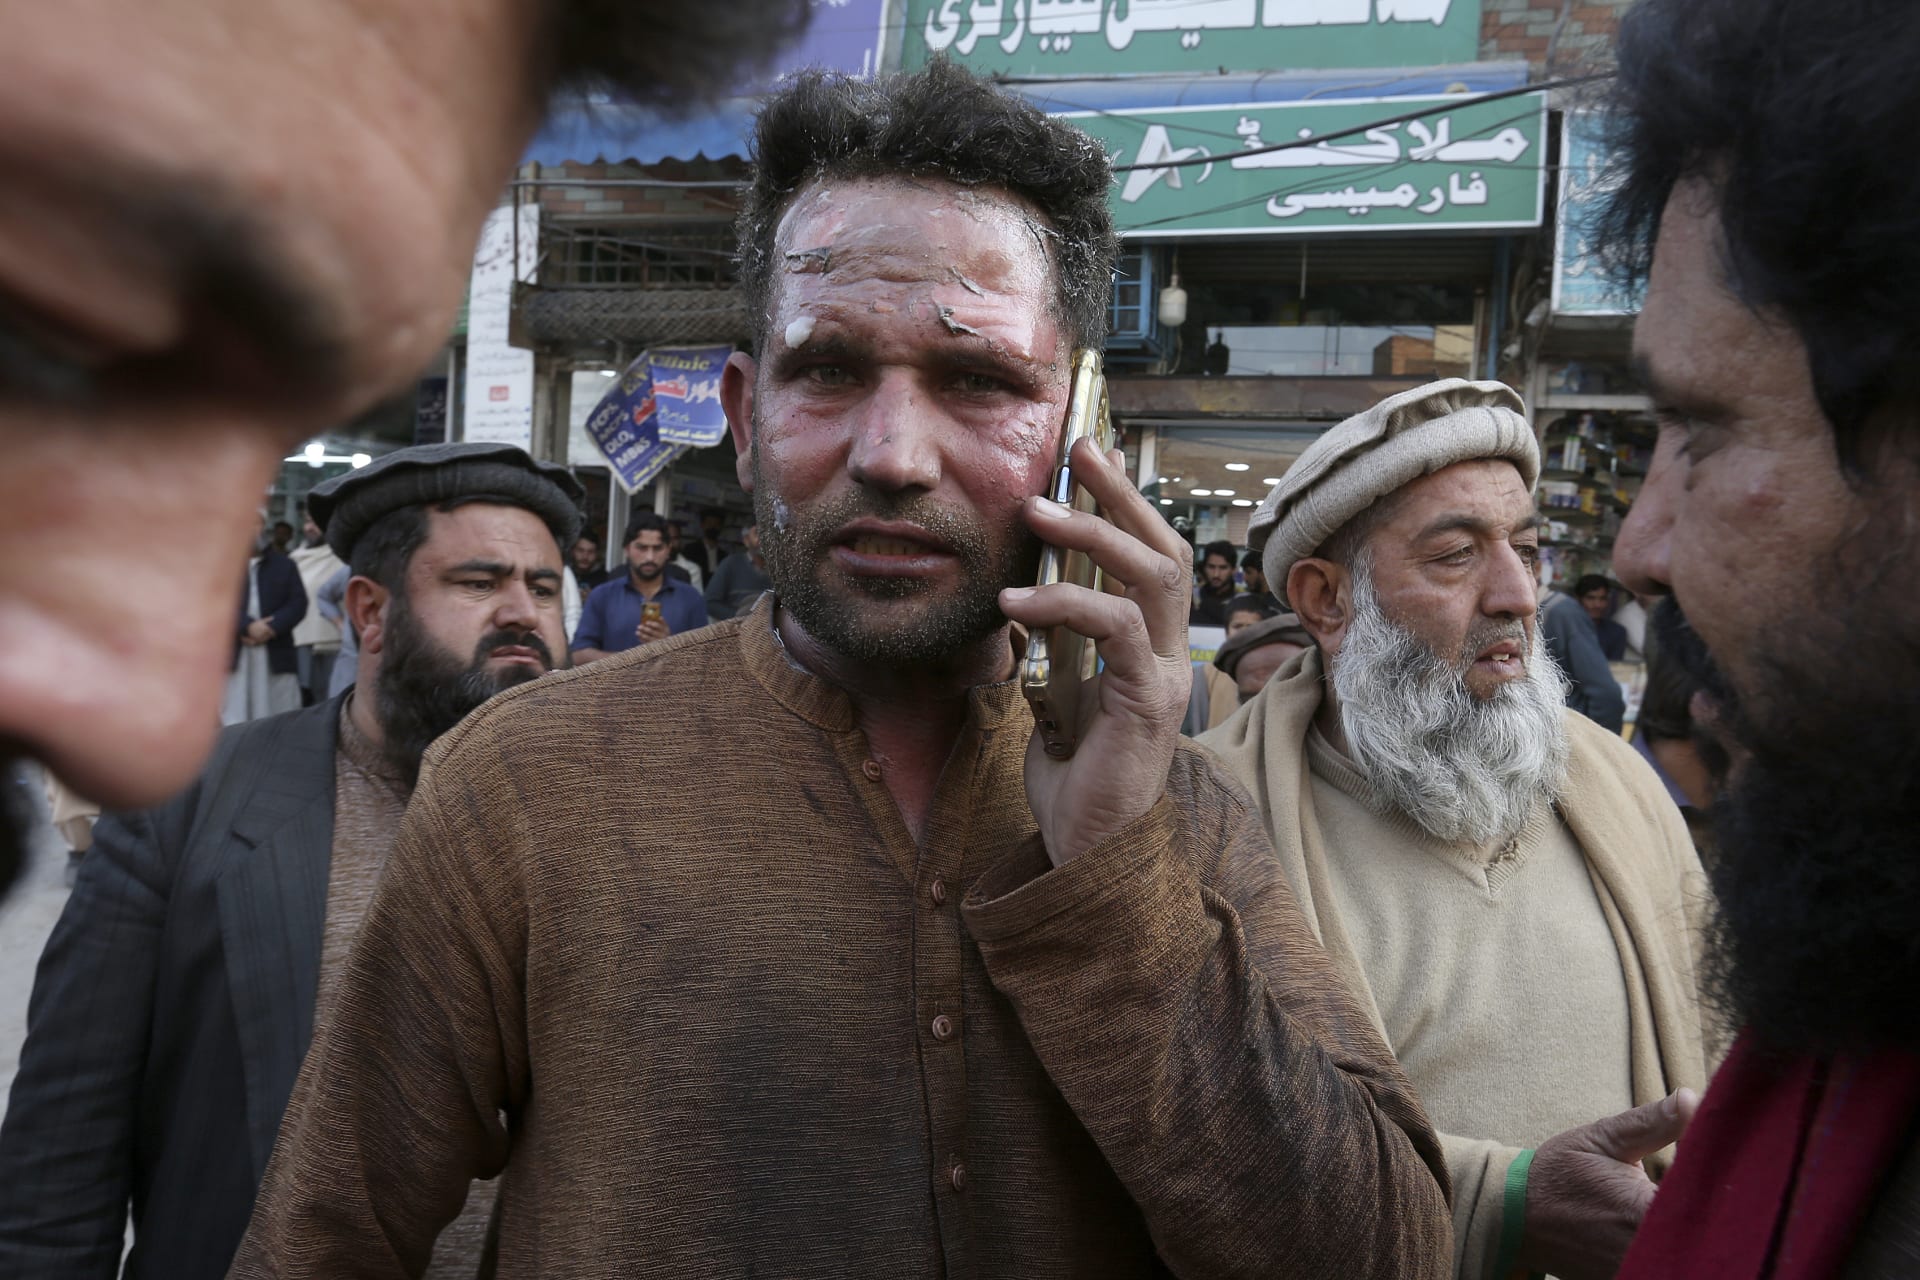 Pumový útok u pákistánské mešity (30. ledna 2023)